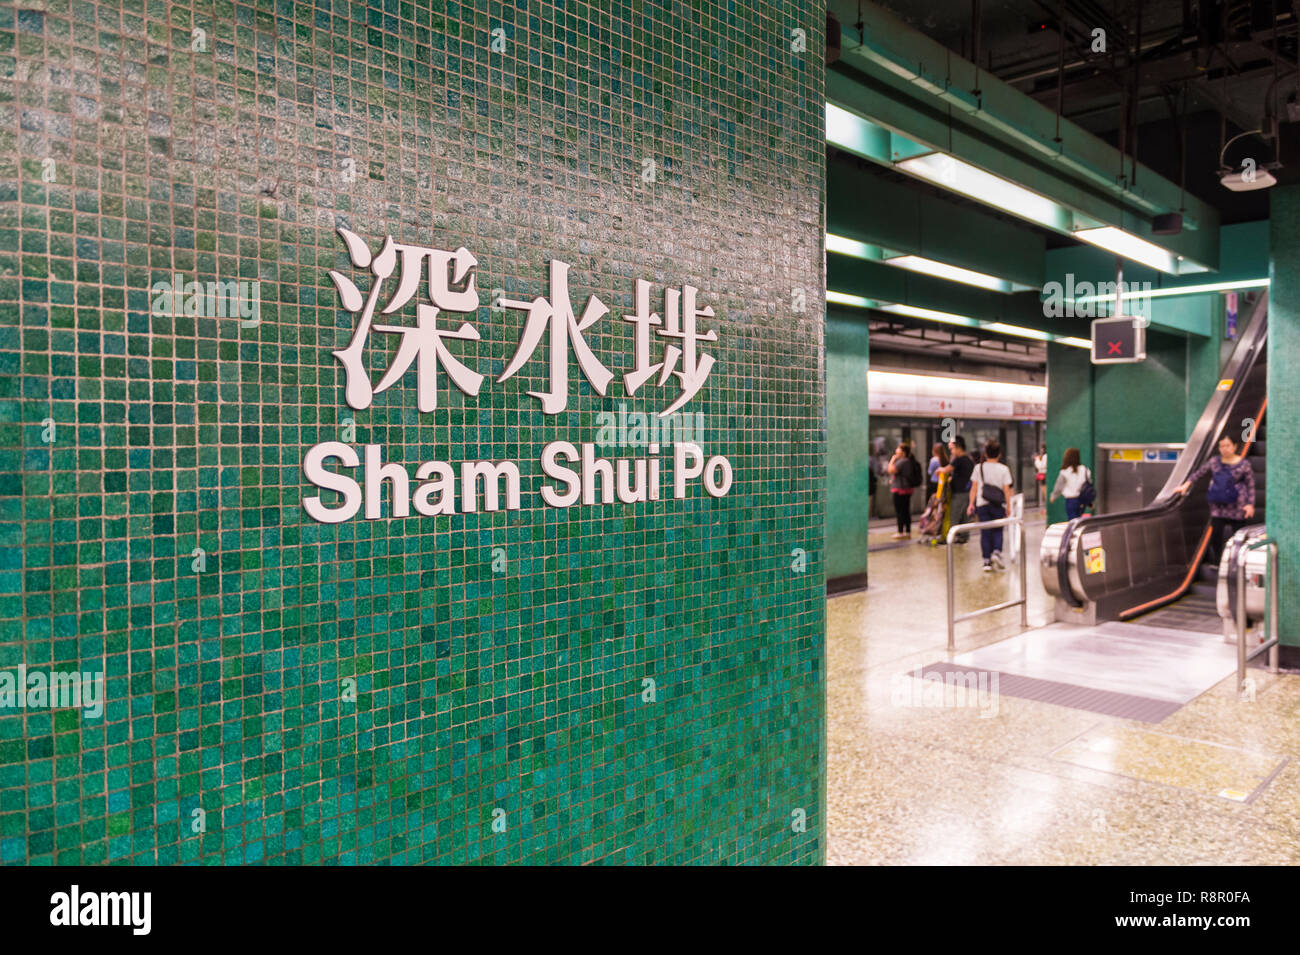 Sham Shui Po Zeichen auf dem Grün Mosaik Wand des unterirdischen MTR-Bahnhof, Sham Shui Po, Kowloon, Hong Kong Stockfoto